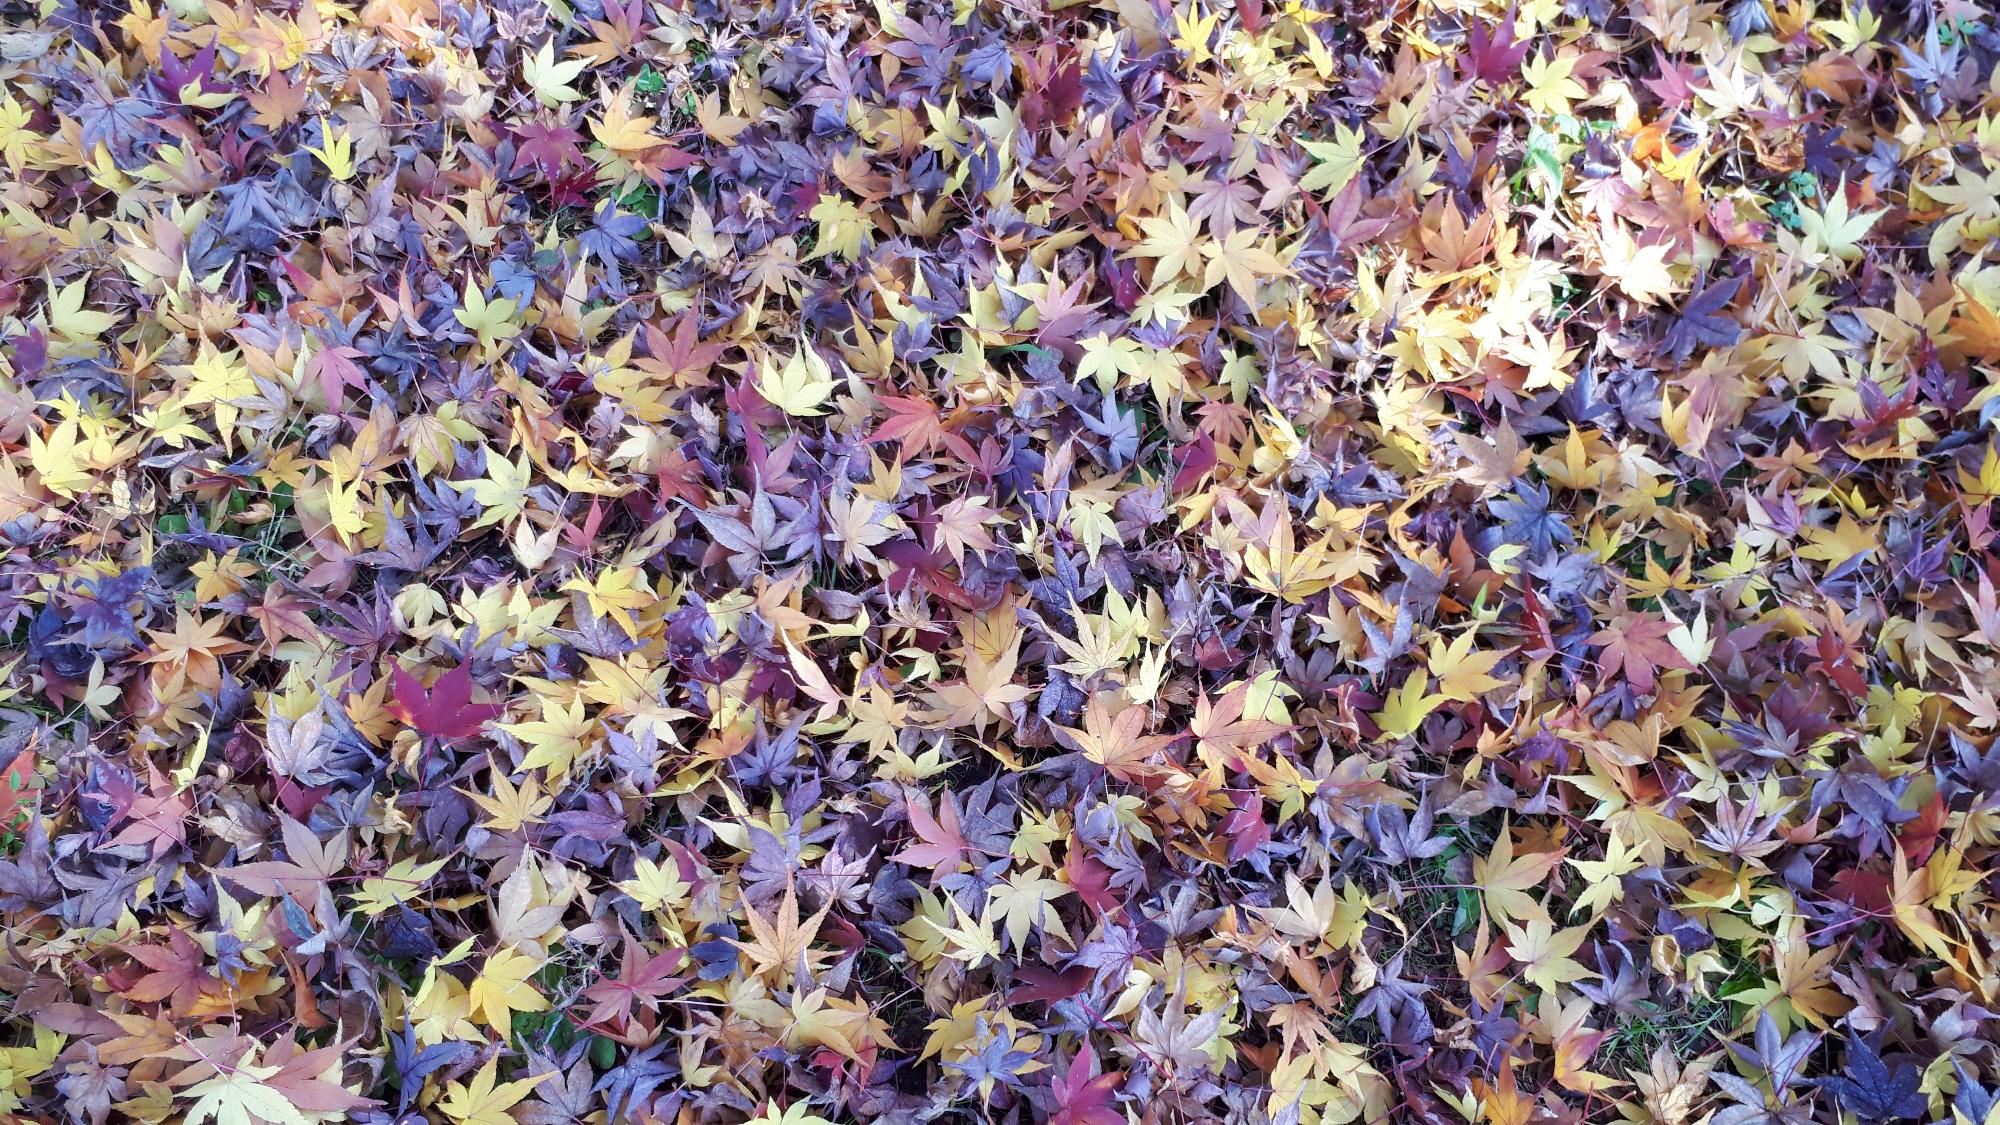 防災の丘公園にて撮影された、地面を覆いつくすように敷き詰めたかのような色とりどりに紅葉した落ち葉